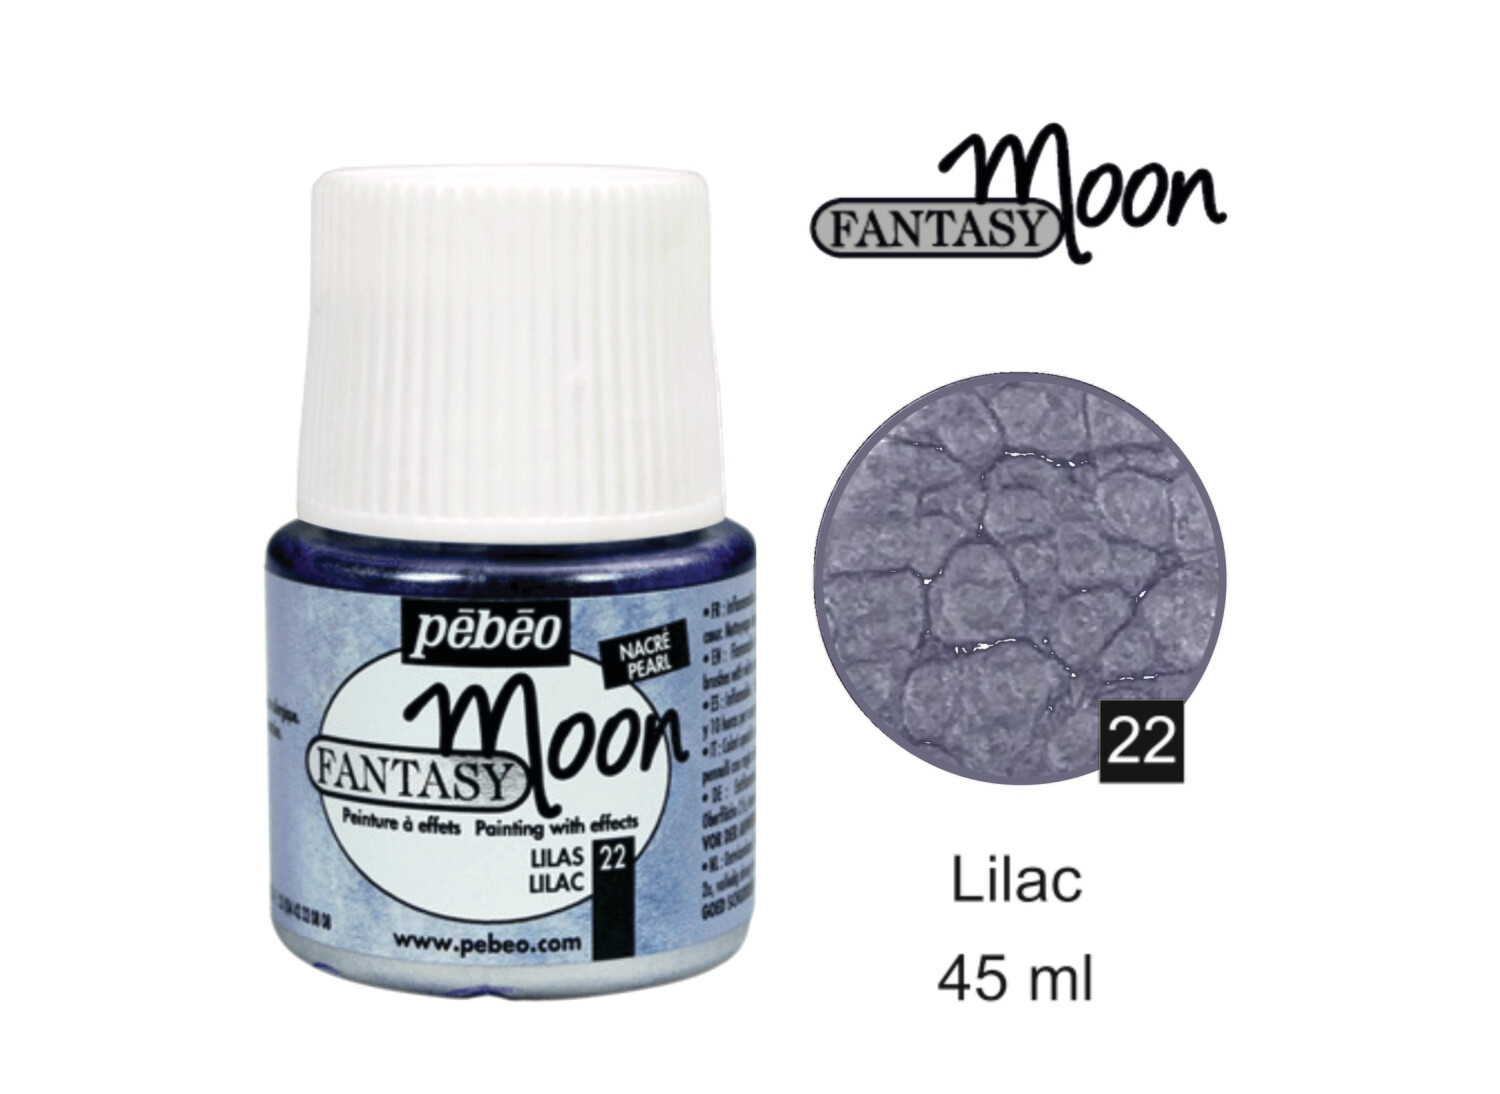 Fantasy Moon Decorative color Lilac No. 22, 45 ml